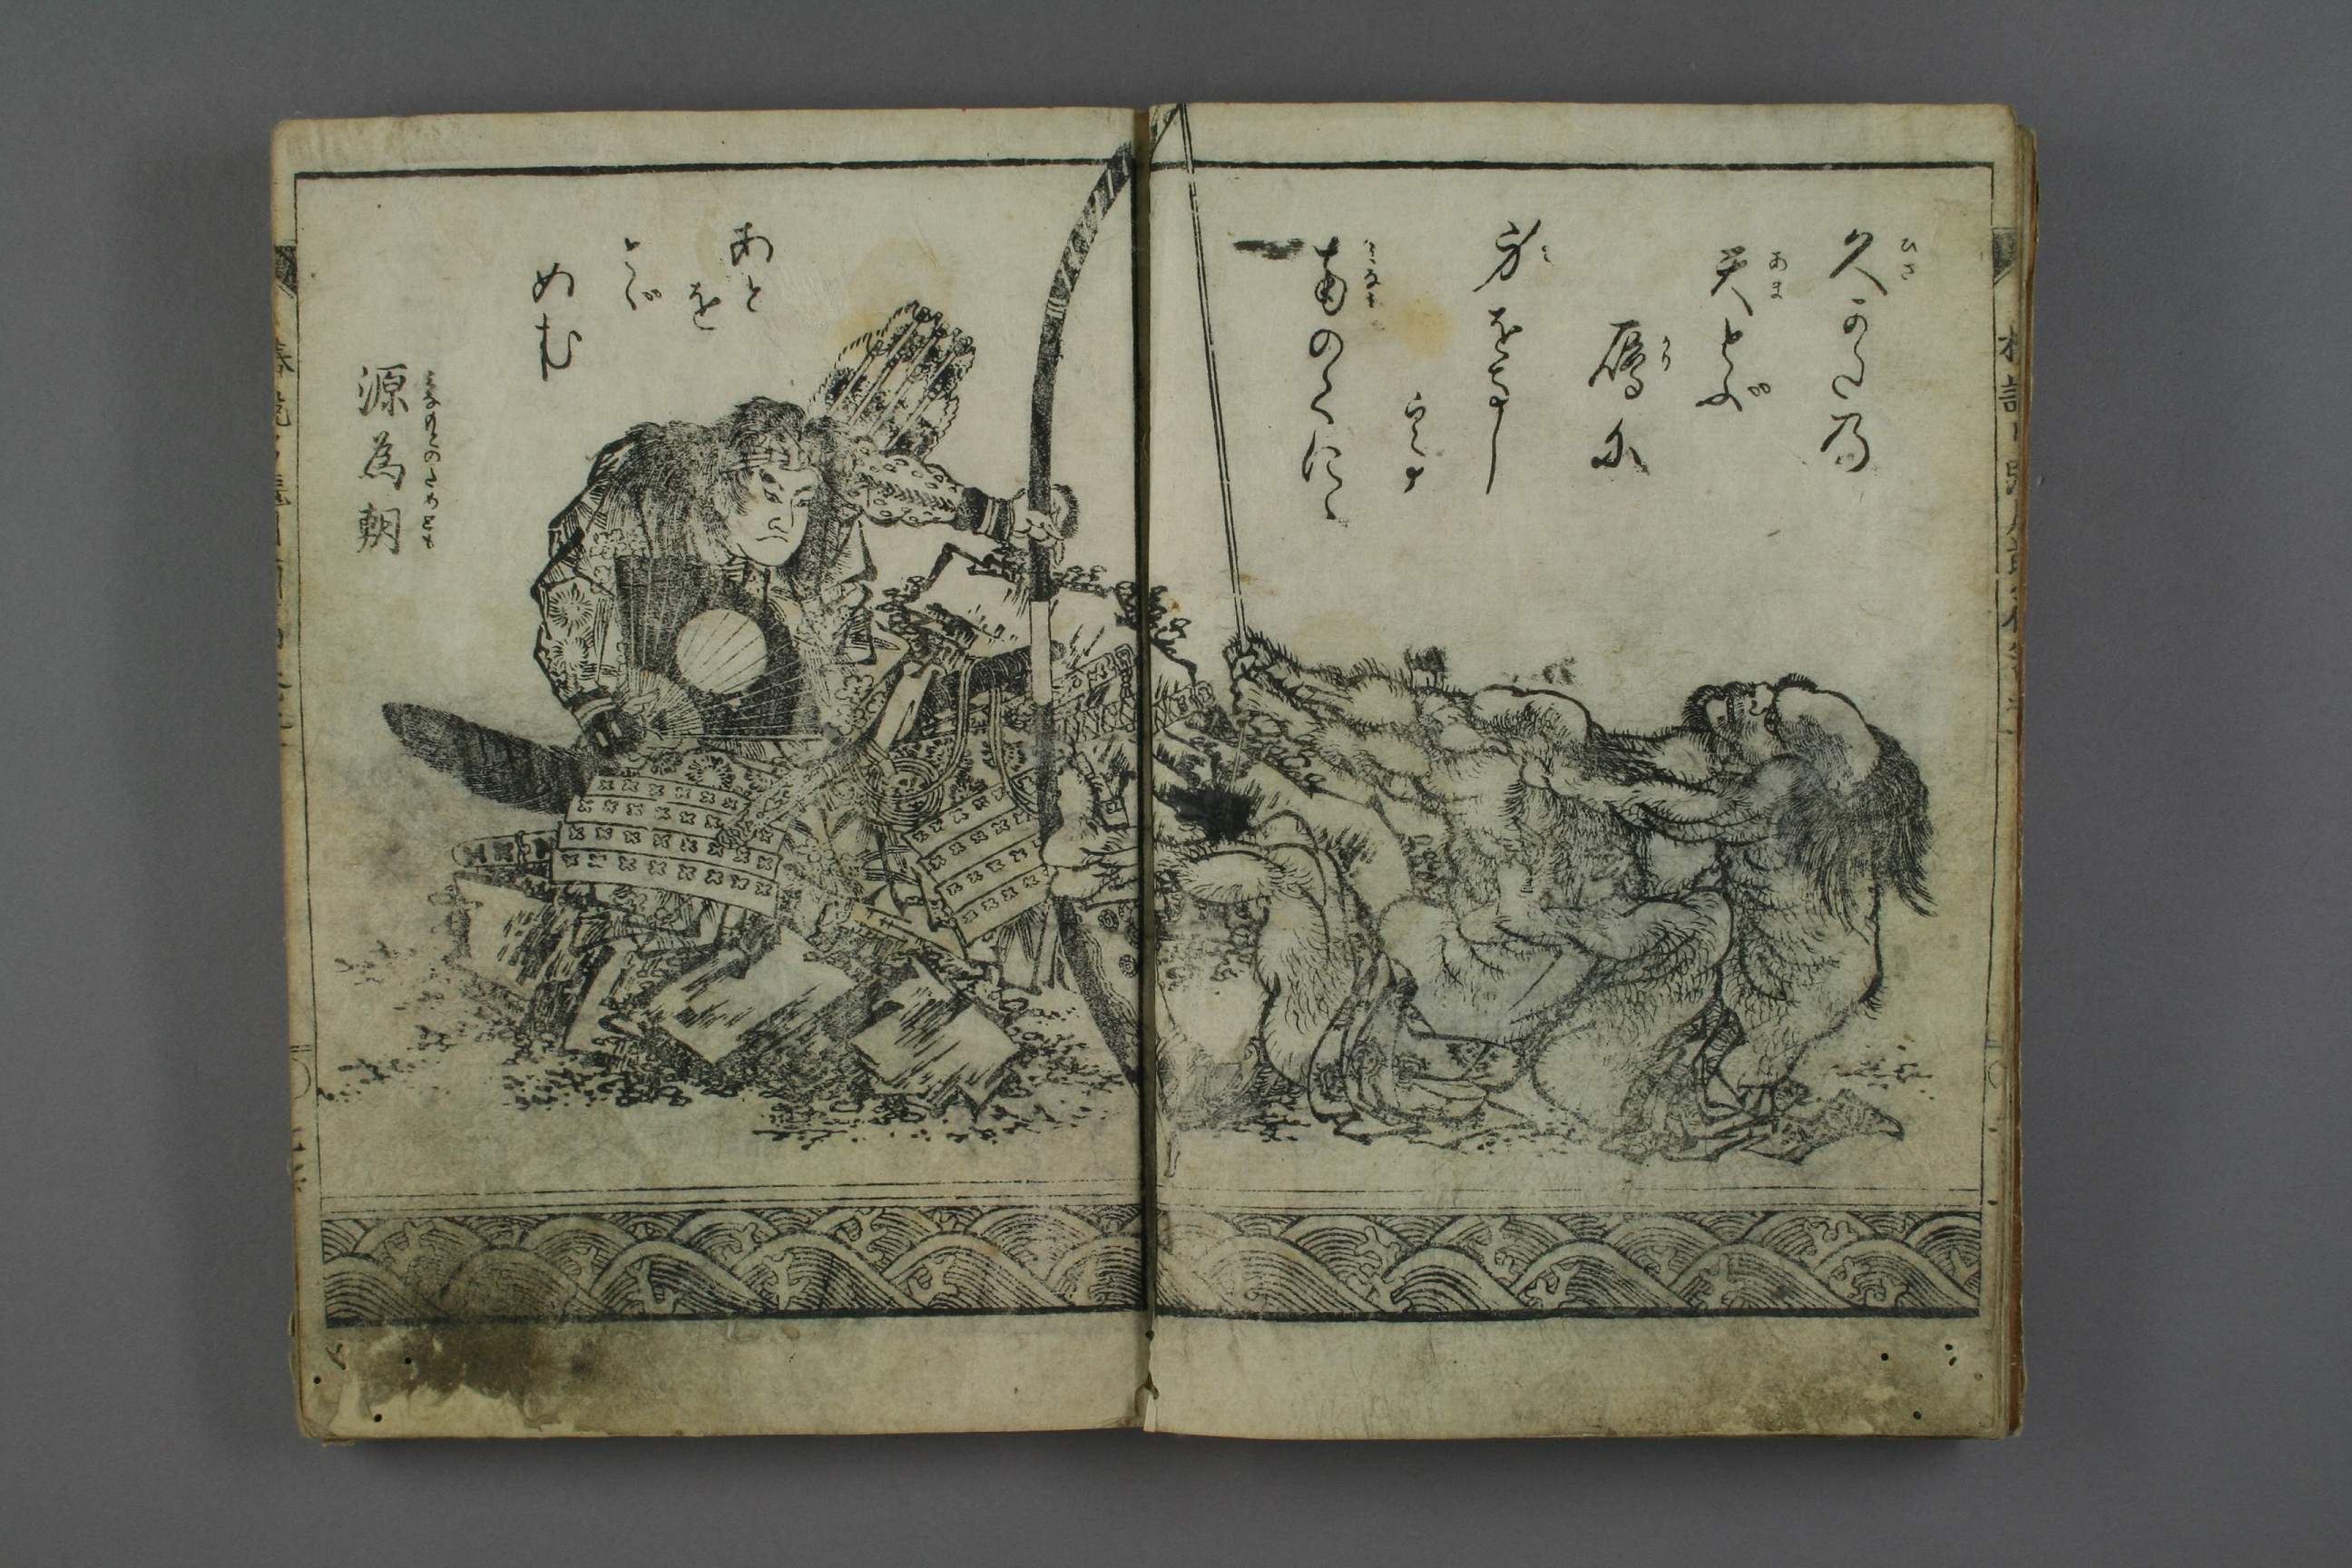 Lyon Collection : Print : Chinzei Hachirō Tametomo (鎮西八郎為朝 